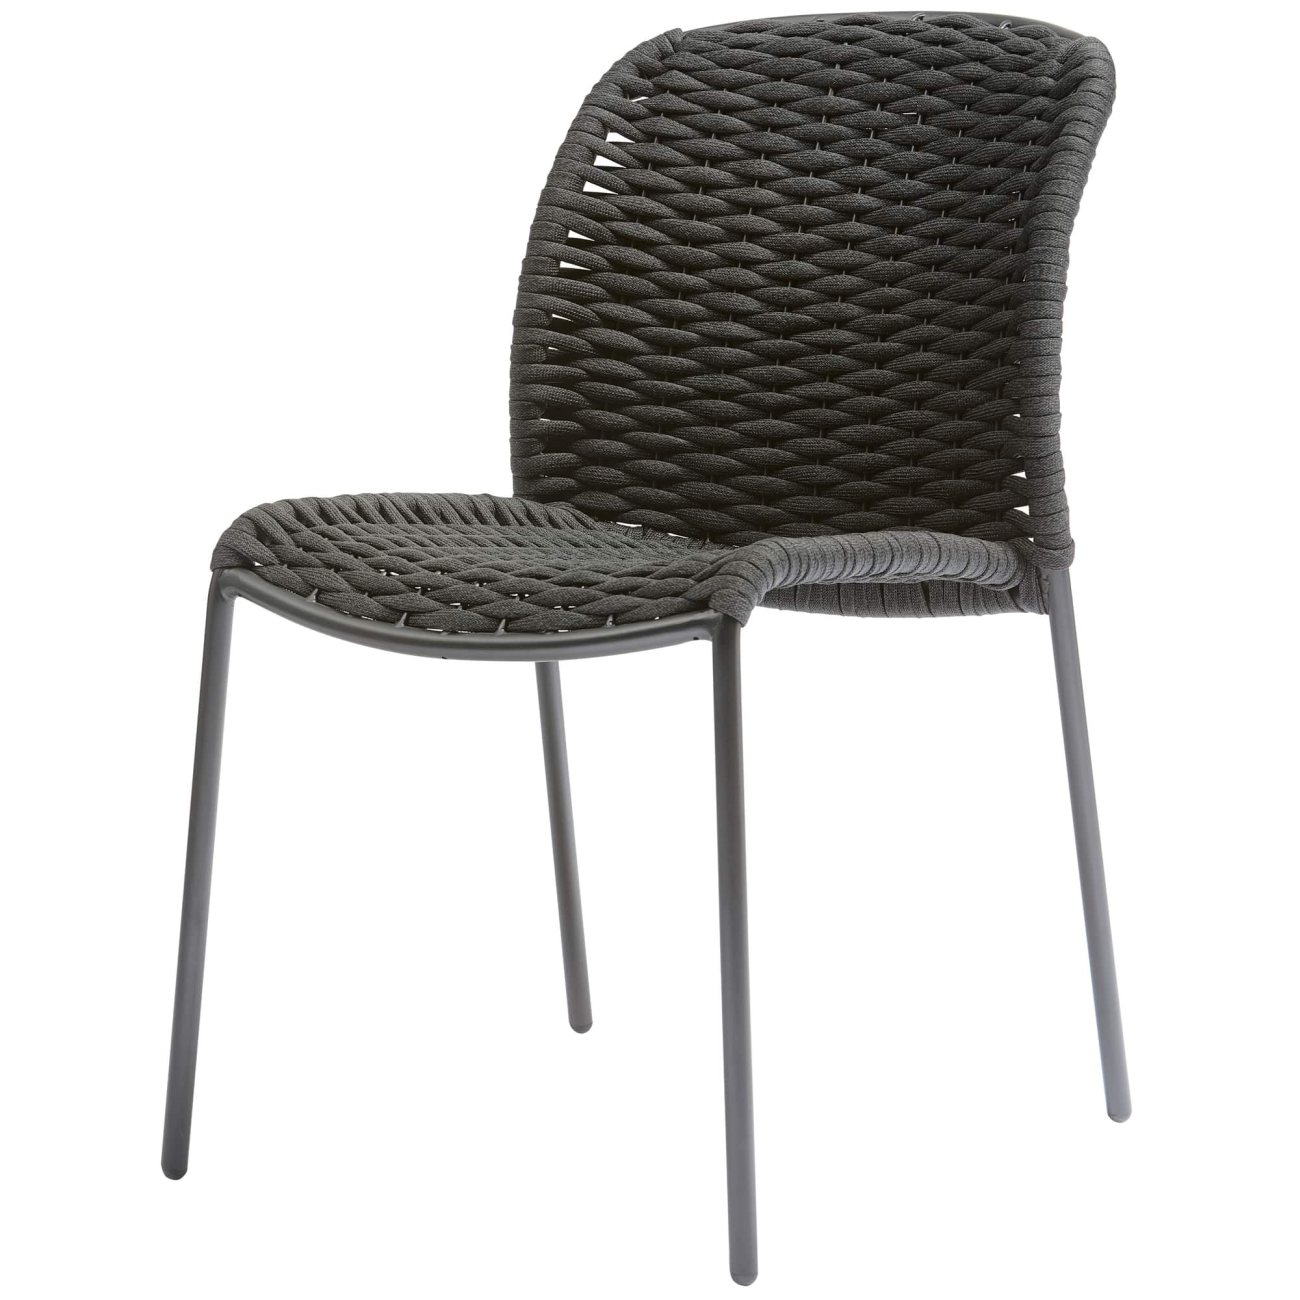 Der Gartenstuhl Taki überzeugt mit seinem modernen Design. Gefertigt wurde er aus Seilen aus Textilene, welche einen schwarzen Farbton besitzt. Das Gestell ist aus Metall und hat eine schwarze Farbe. Der Stuhl ist stapelbar.